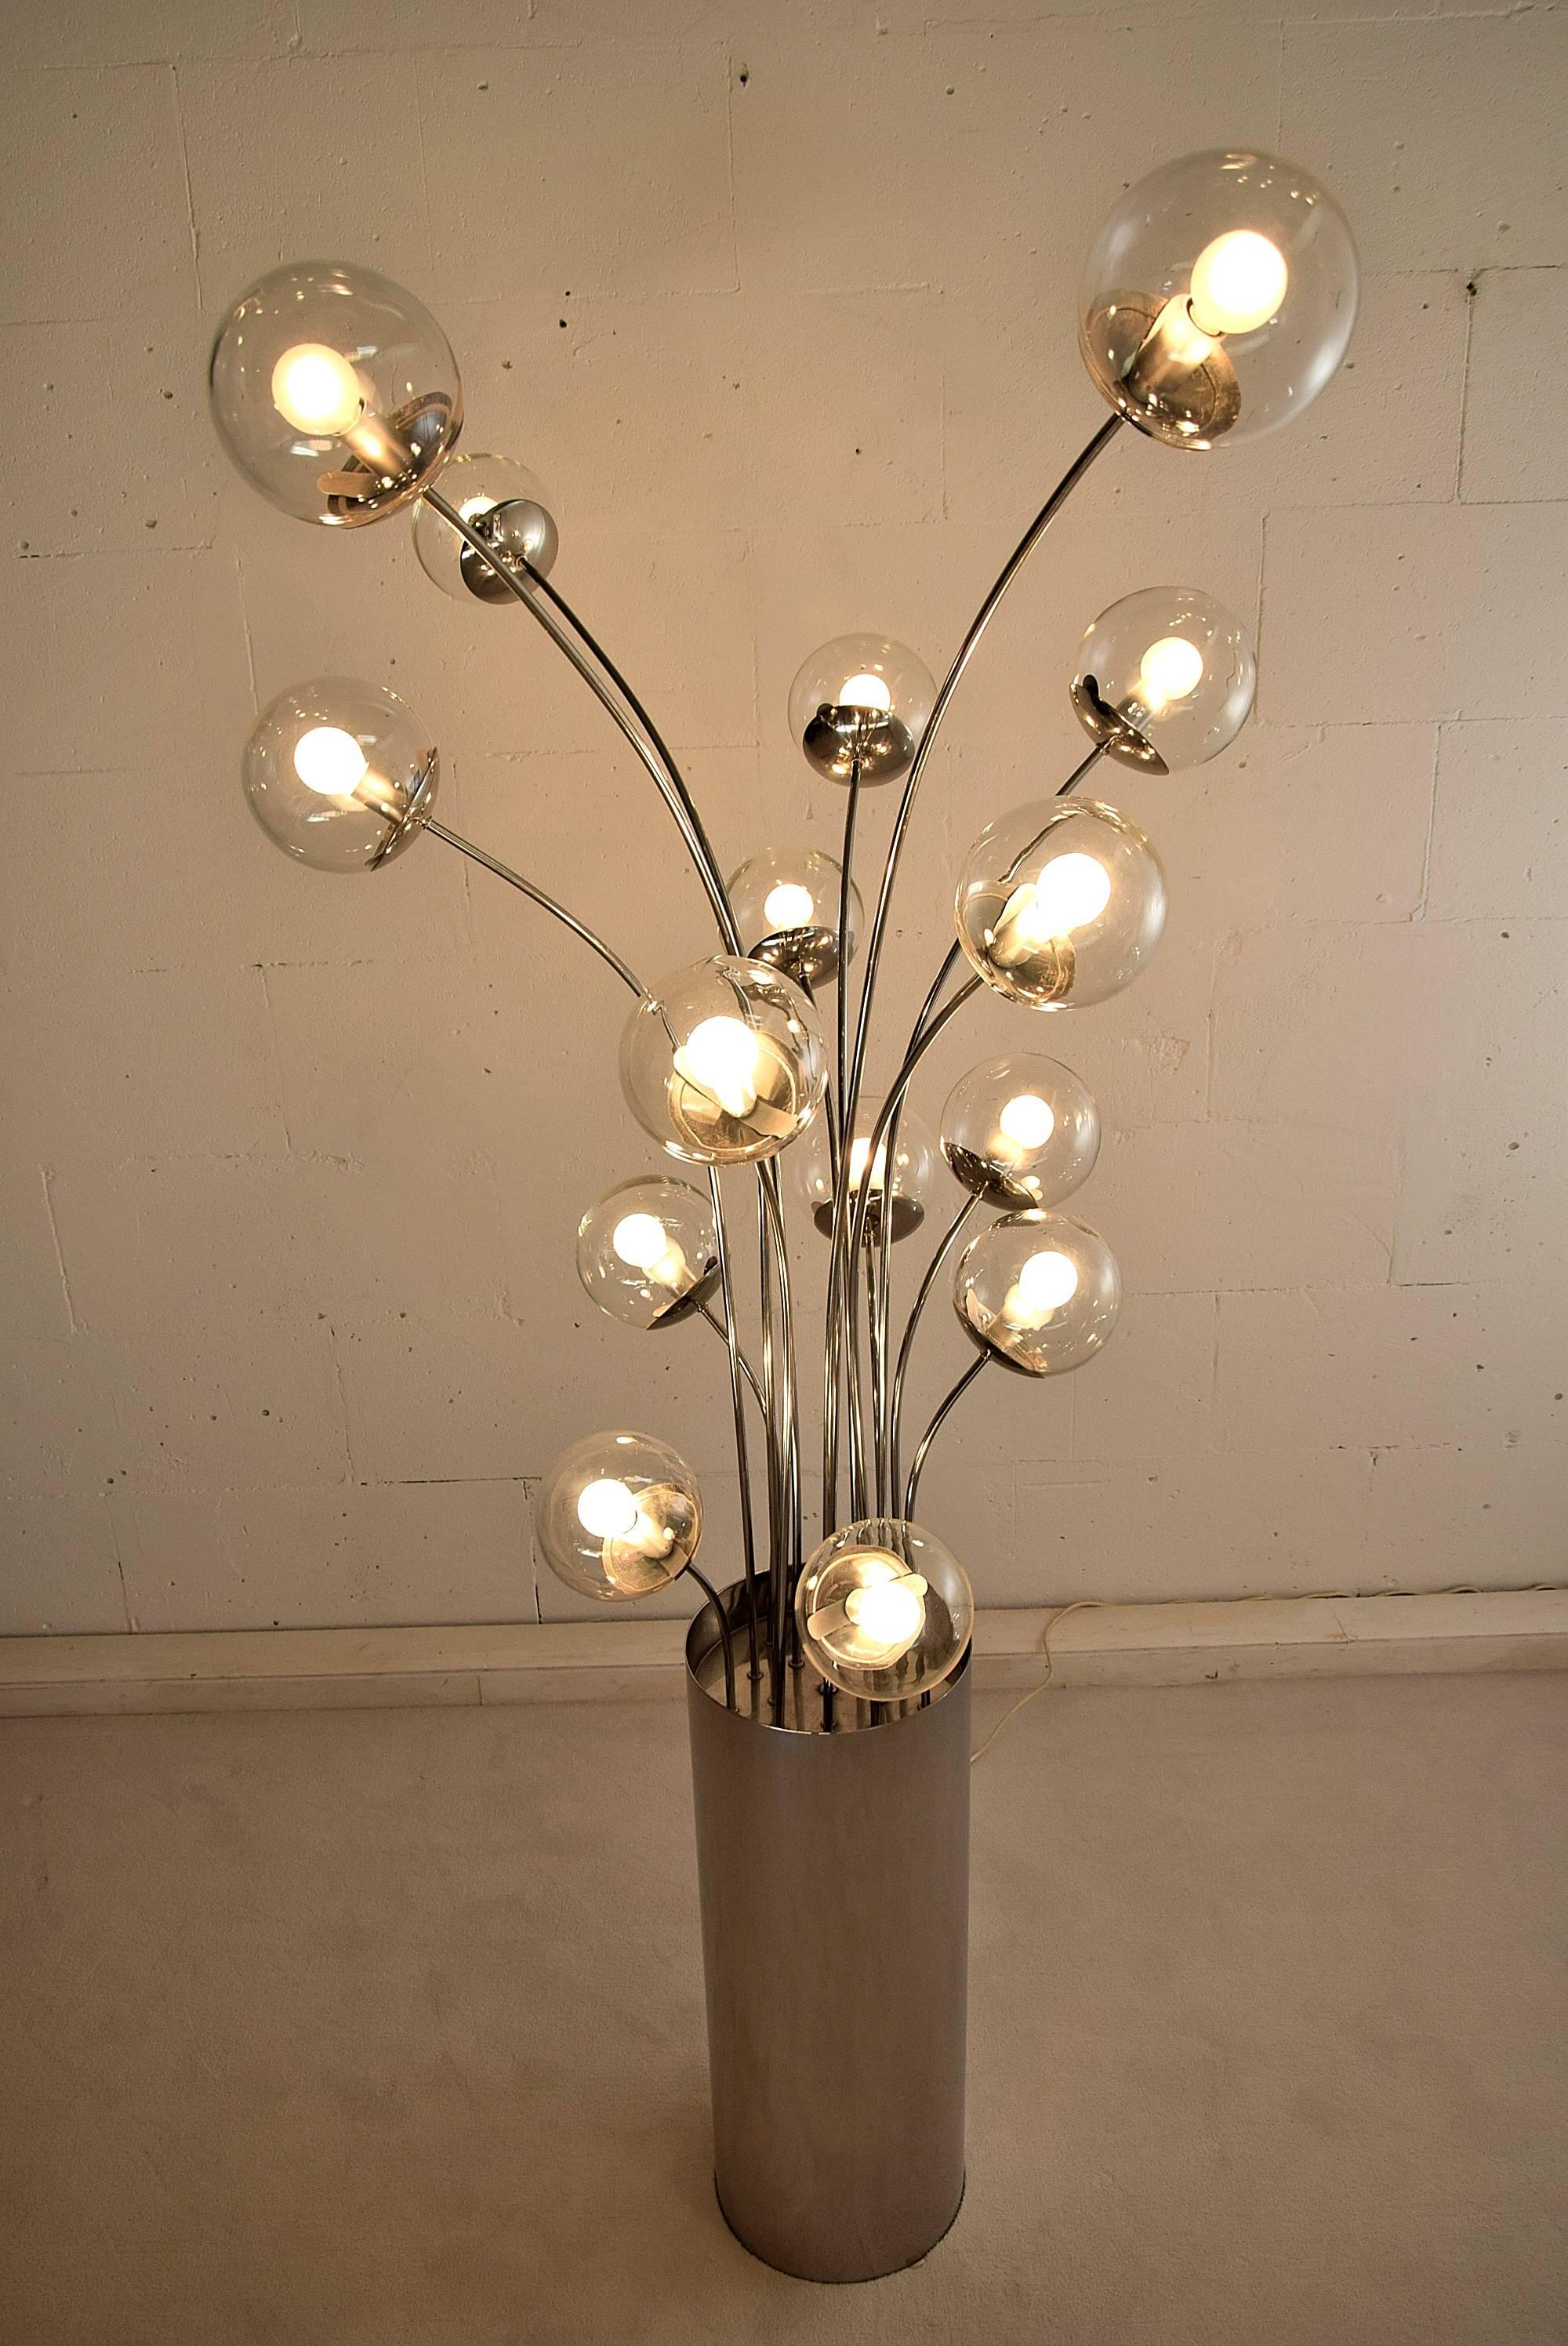 Lumi Italy Mid-Century Modern Stehleuchte aus Chrom.
Diese Lampe wurde 1973 in dem Kultfilm 